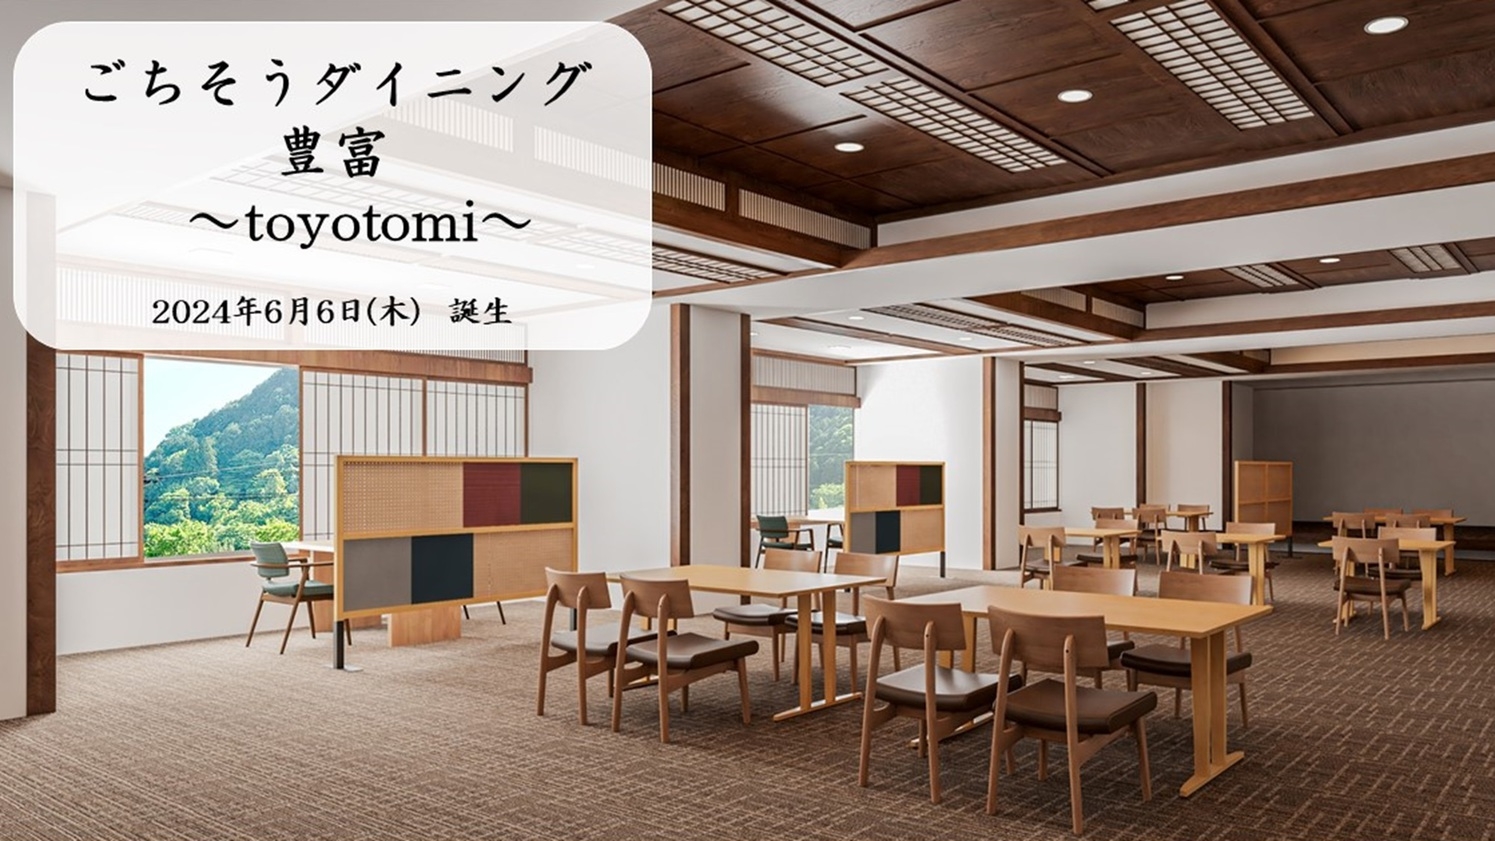 【NEW】ごちそうダイニング豊富〜toyotomi〜 誕生”心温まる食事と空間、新たな魅力がここに”